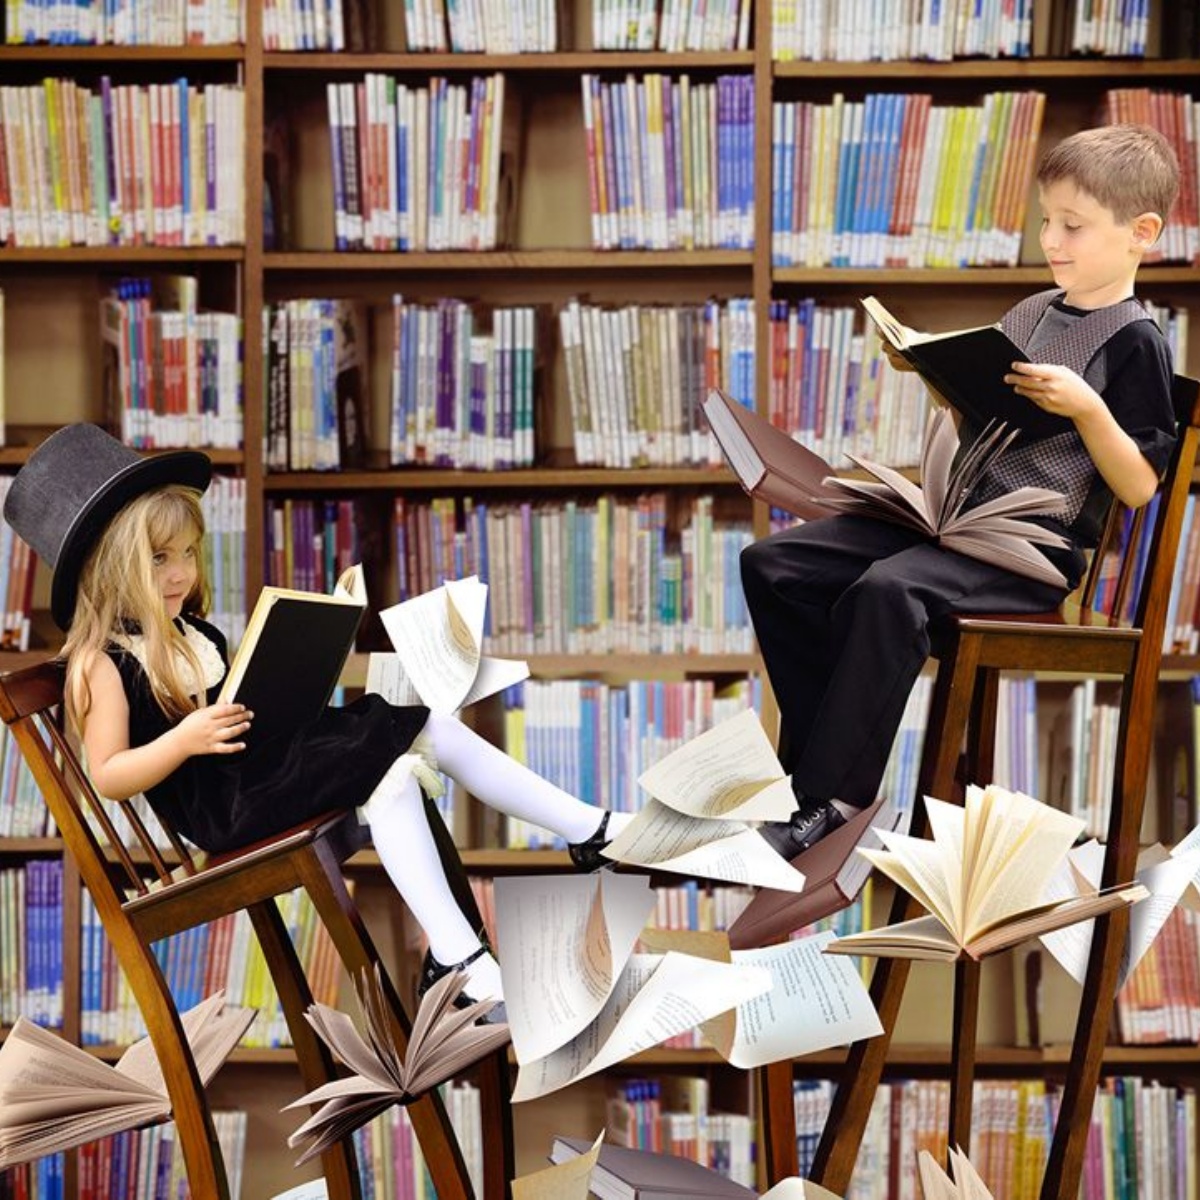 Конкурс читаем в библиотеке. Дети в библиотеке. Читатели в библиотеке. Фотосъемка в библиотеке. Фотосессия в библиотеке.